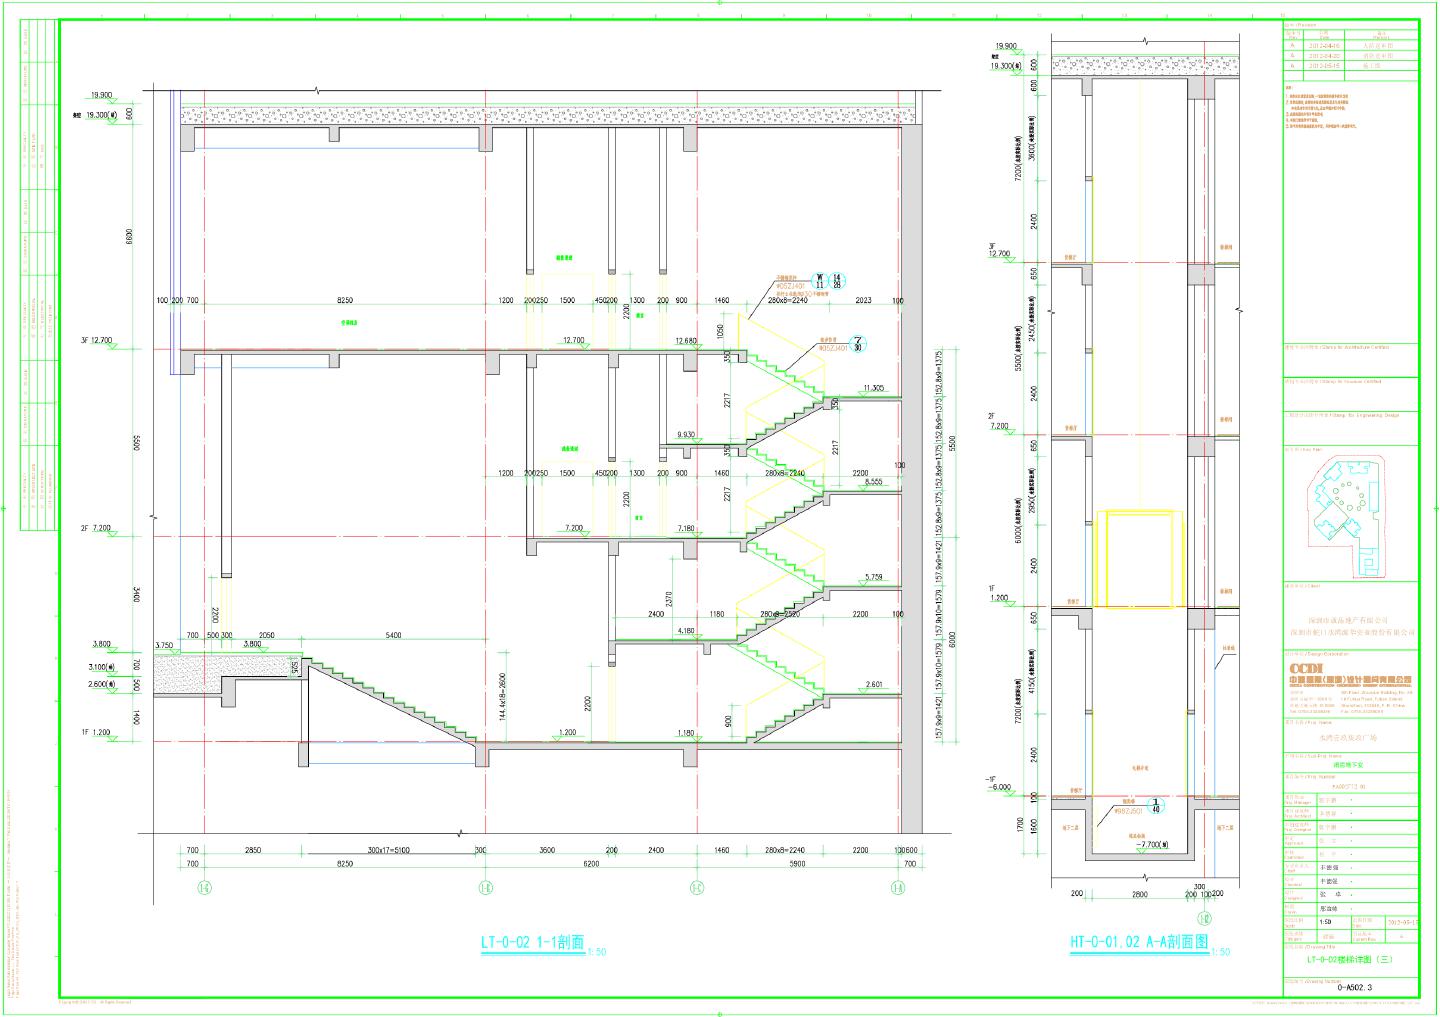 水湾壹玖柒玖广场裙房地下室-建施LT-0-02楼梯详图CAD图